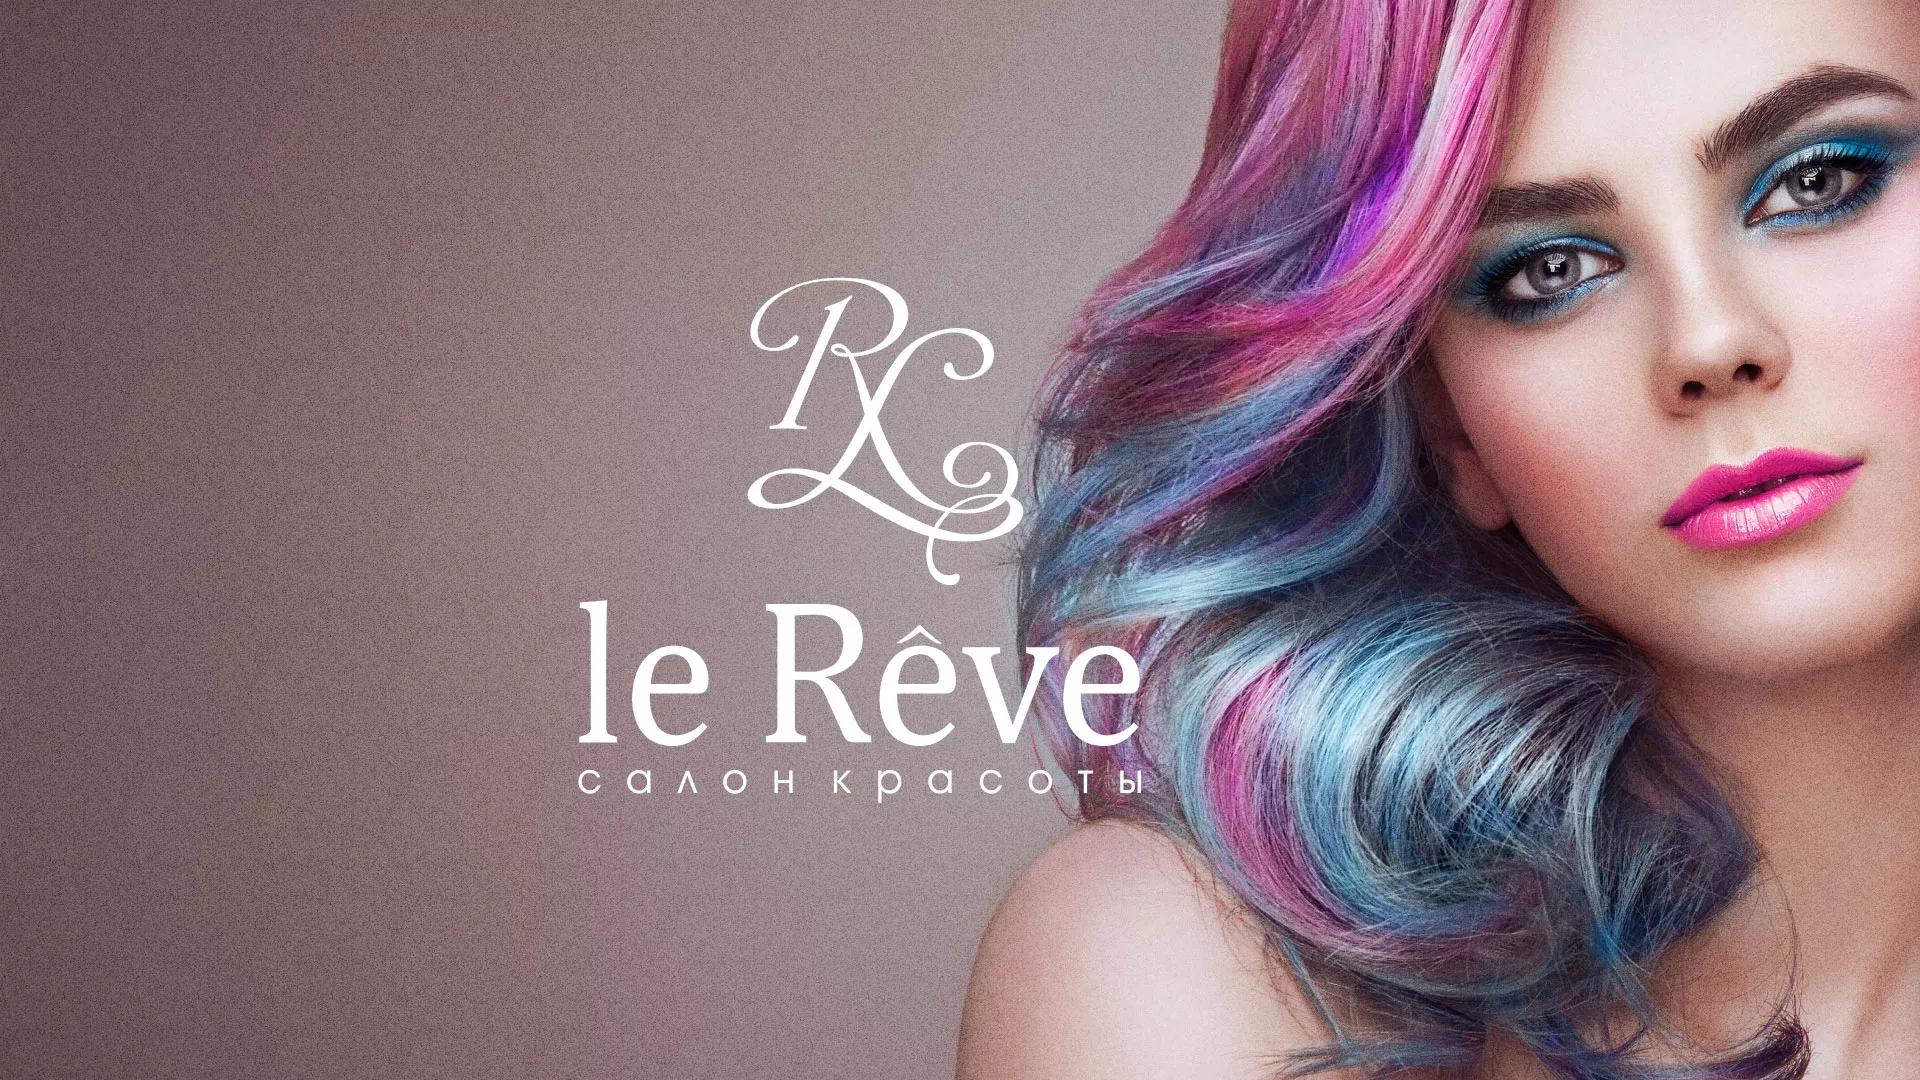 Создание сайта для салона красоты «Le Reve» в Рыбинске